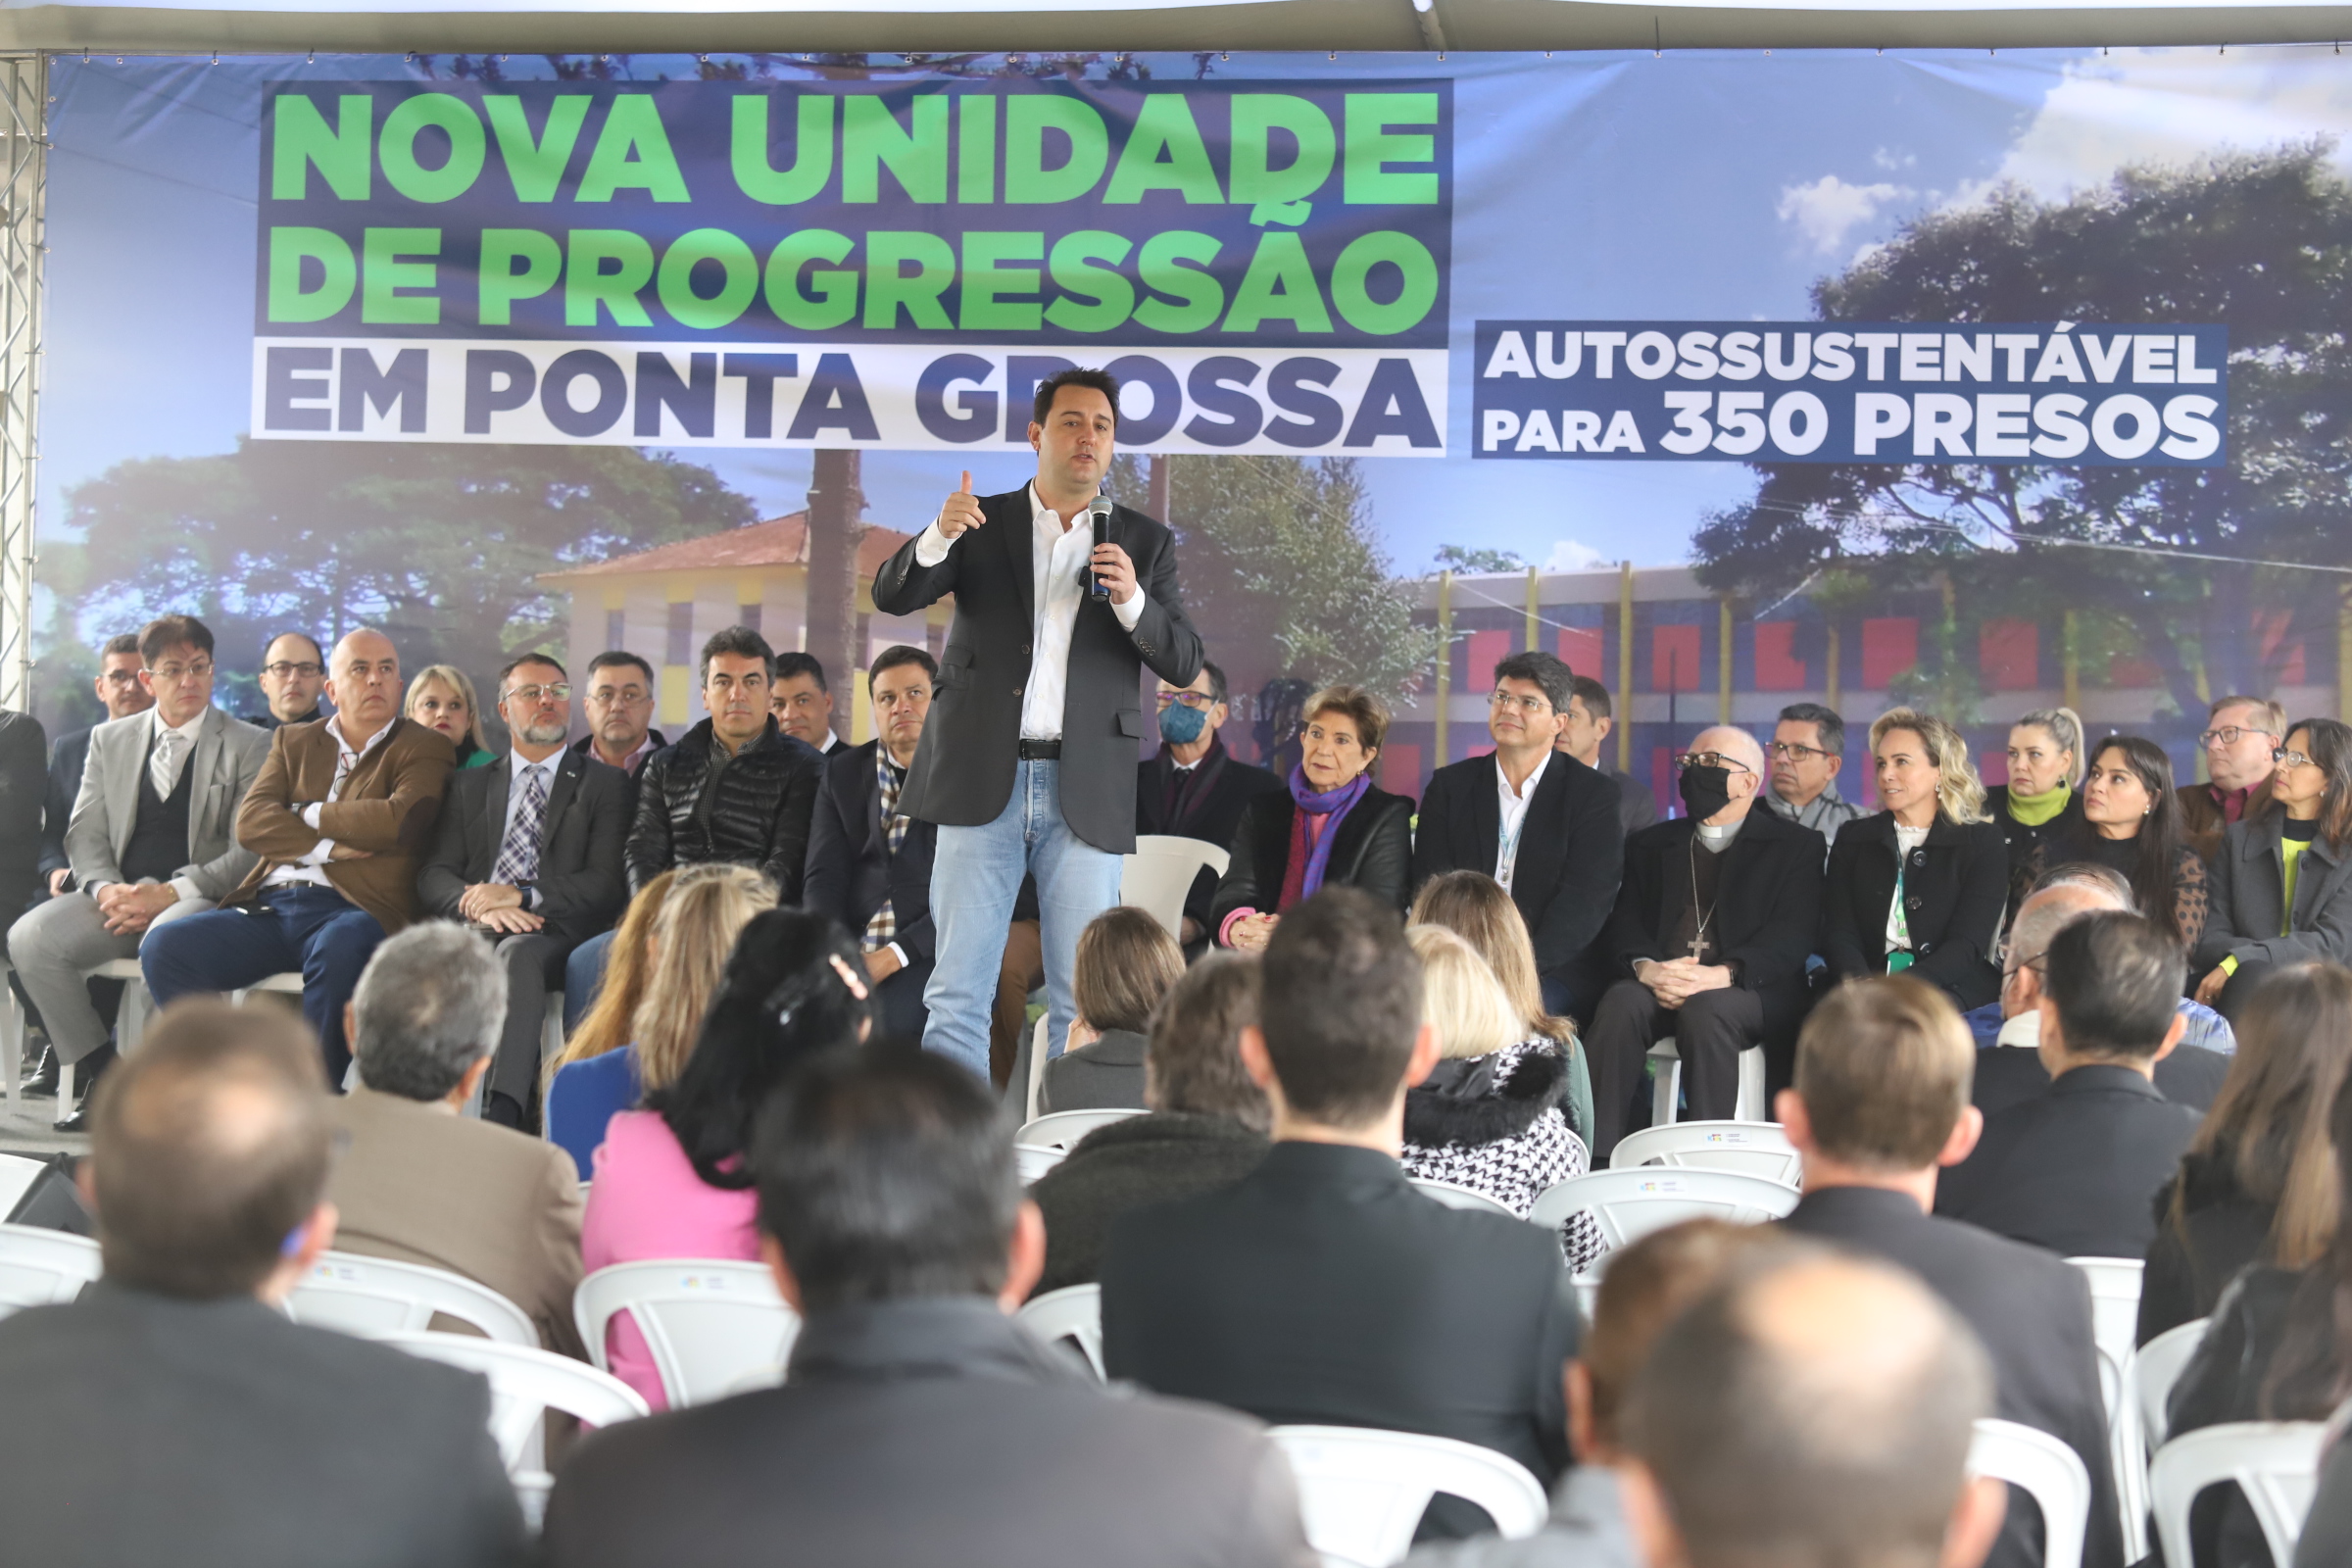 Governador inaugura nova Unidade de Progressão para recuperação de presos em Ponta Grossa